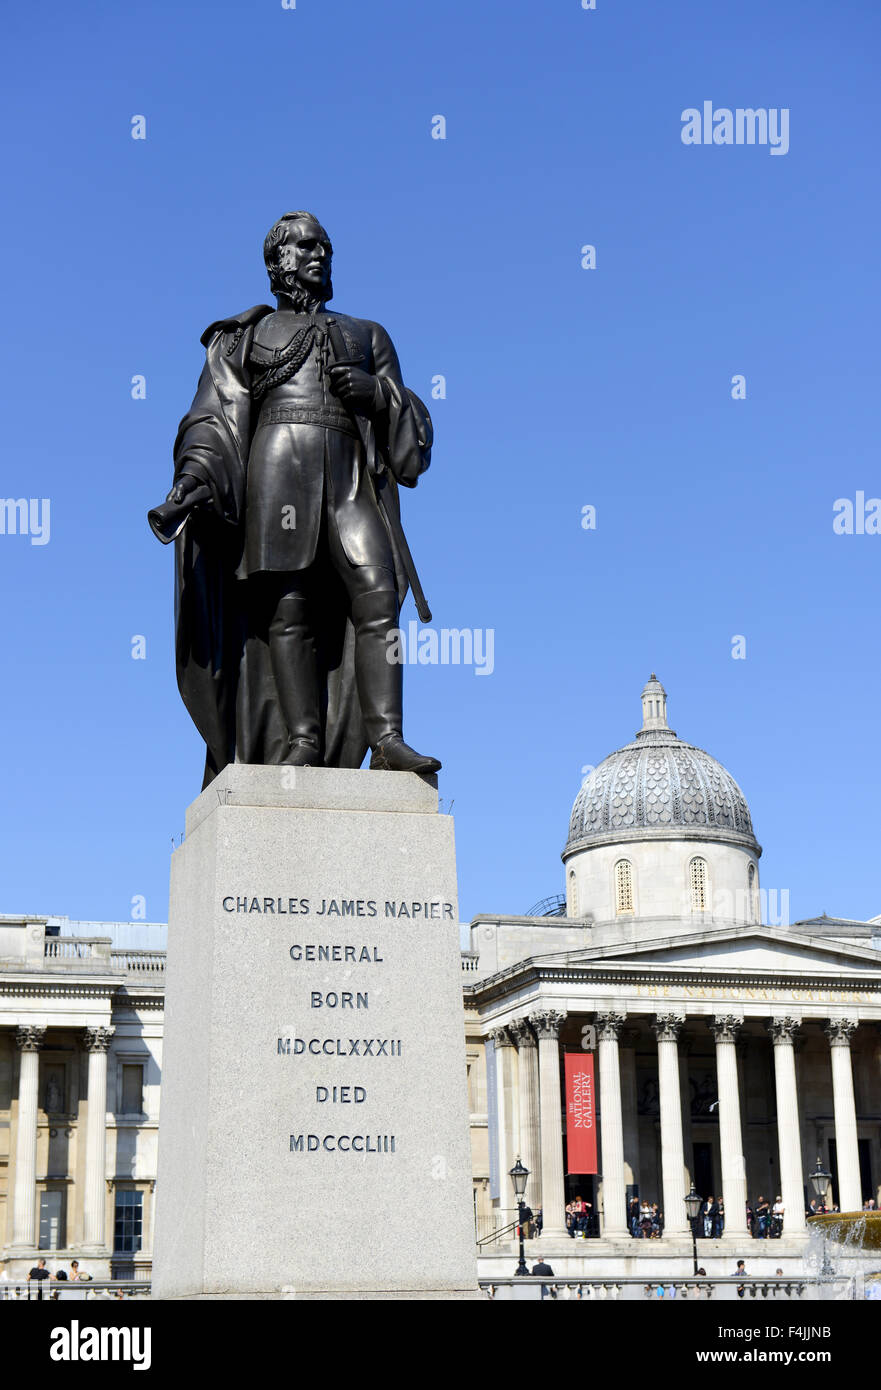 Statue du général Charles James Napier, Trafalgar Square, Londres, Angleterre, Royaume-Uni Banque D'Images